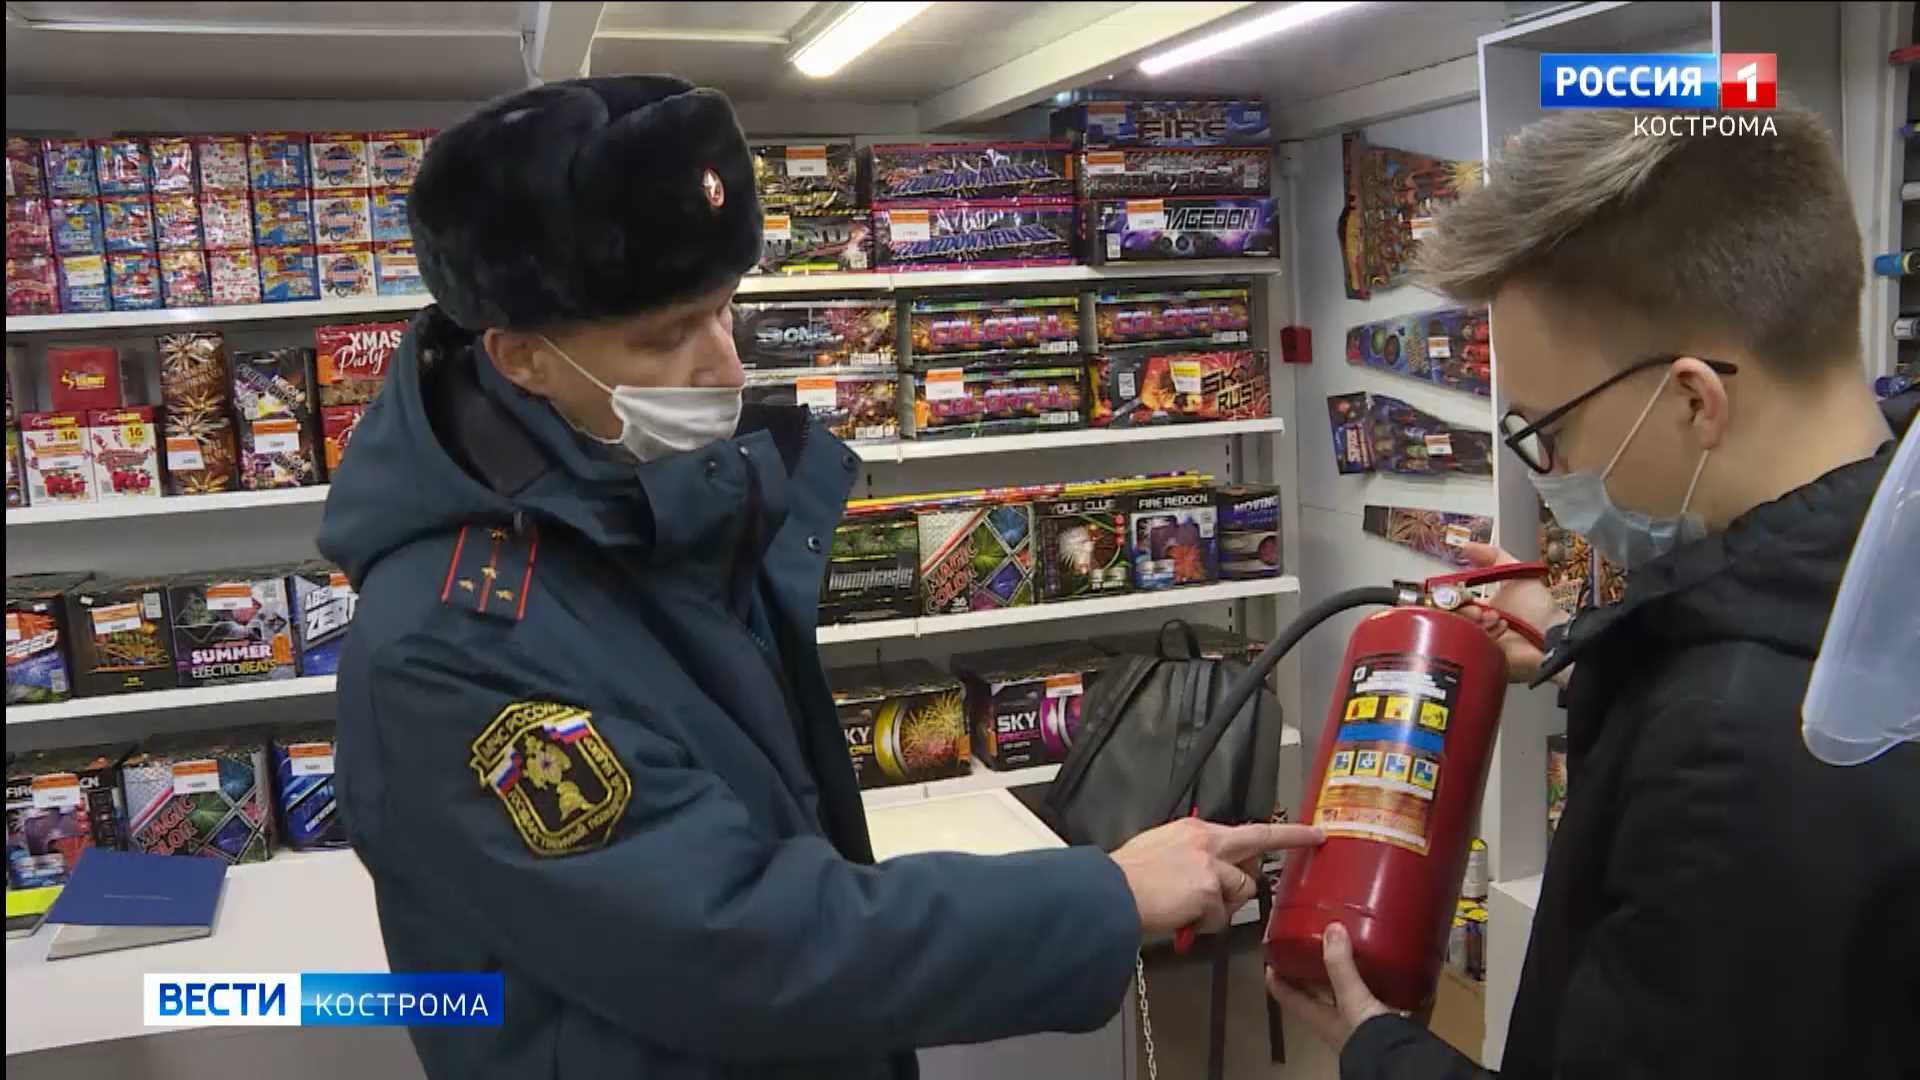 Сотрудники МЧС проверили новогодние арсеналы пиротехников в Костроме